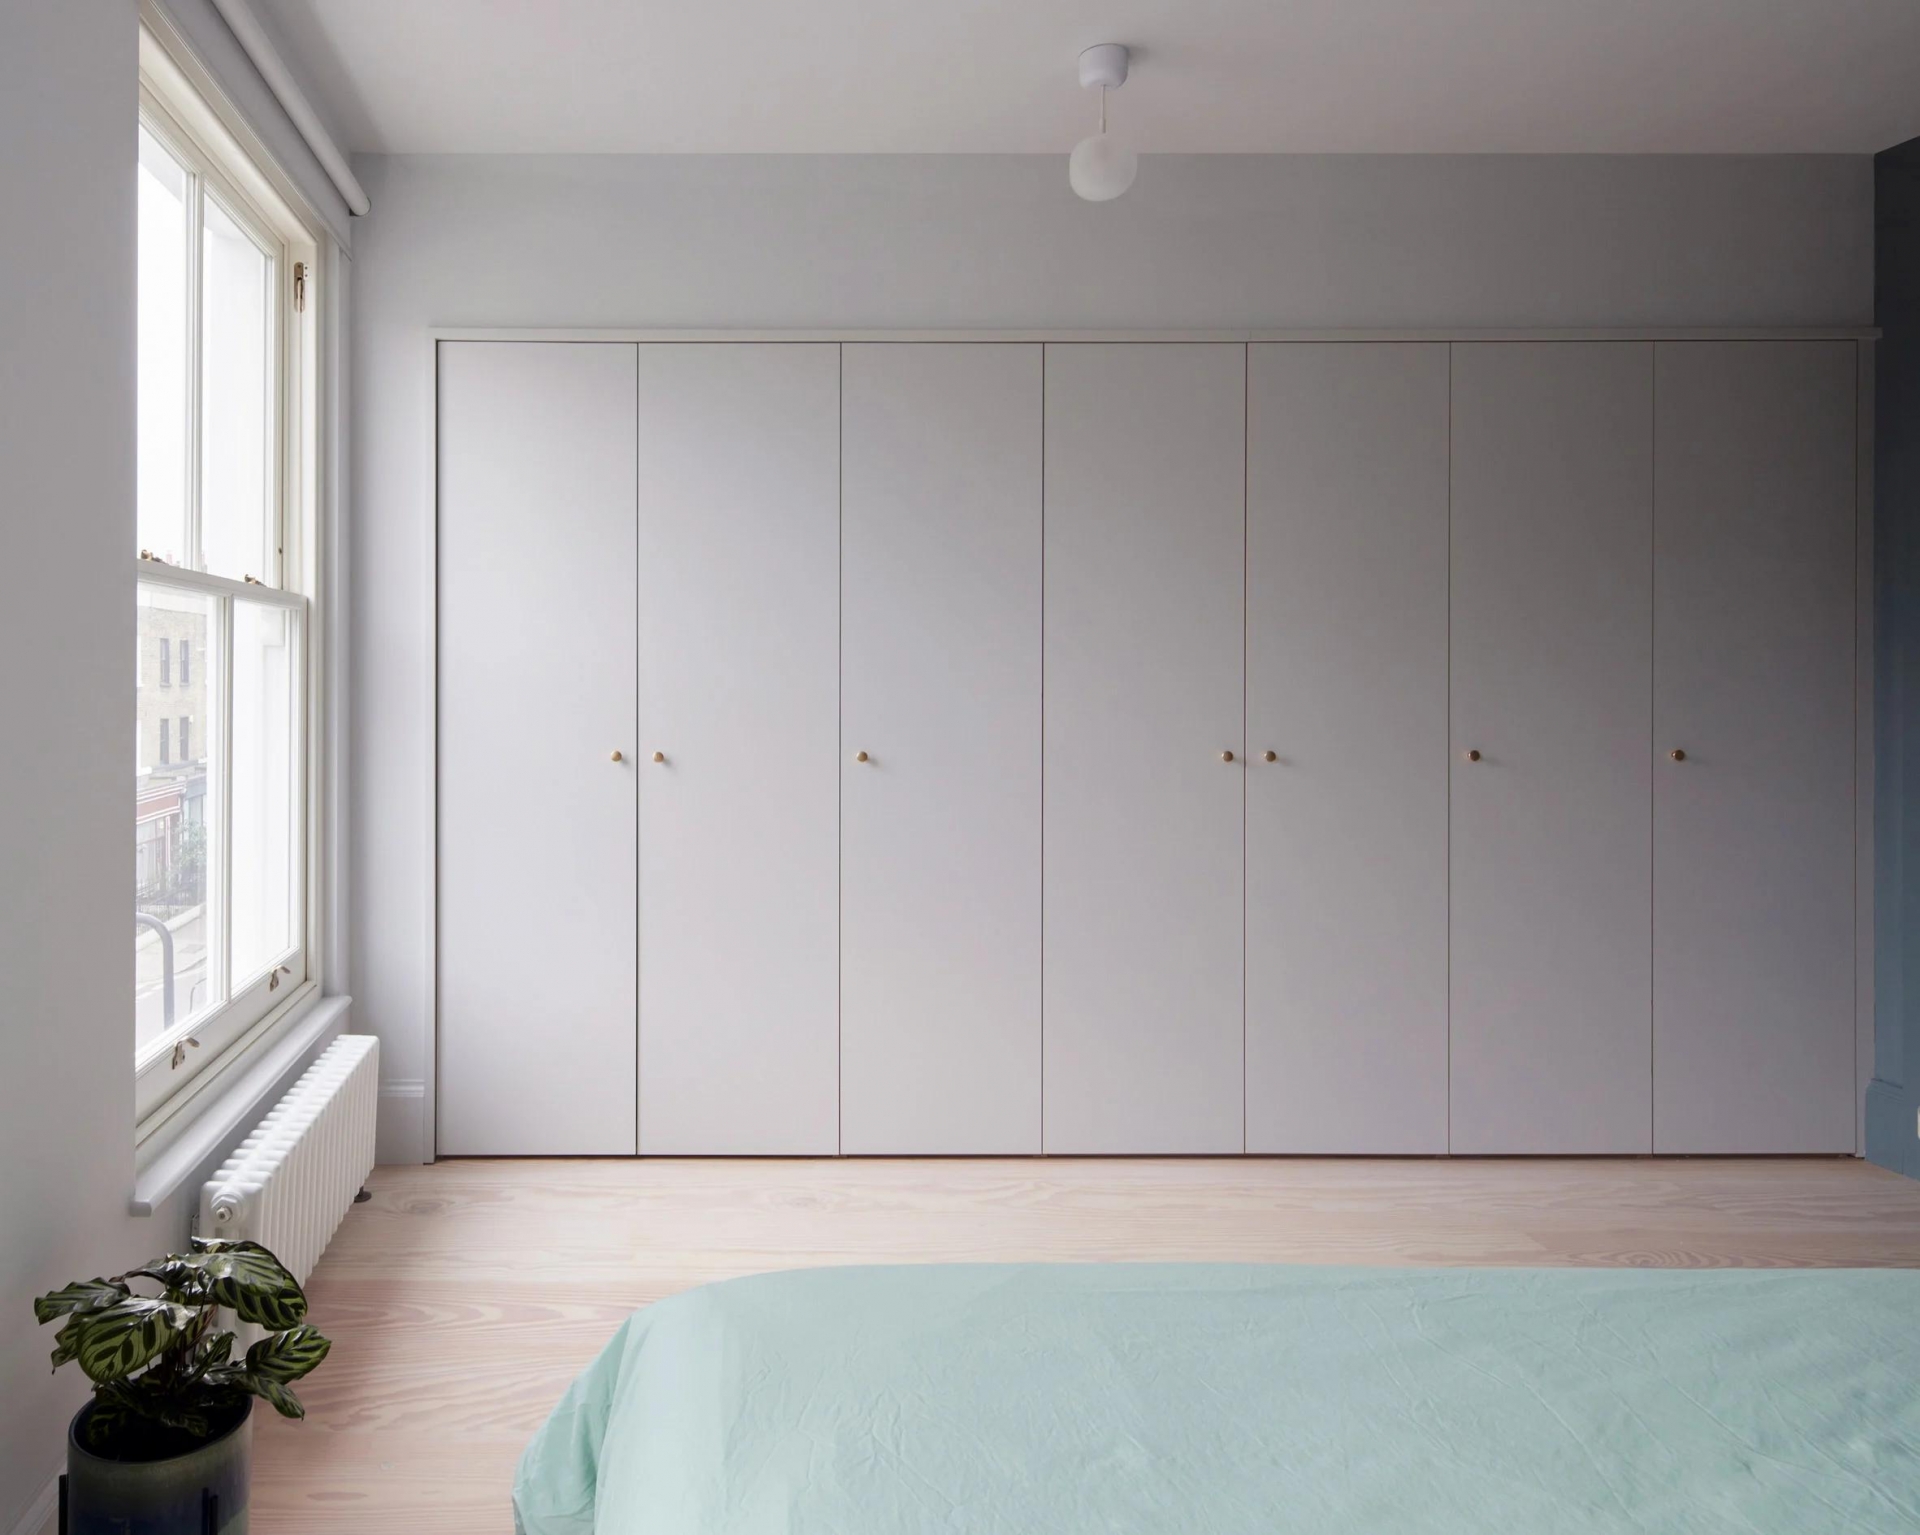 Một phòng ngủ khác sử dụng gam màu xám chủ đạo, kết hợp trần nhà trắng và sàn gỗ ấm áp. Tương tự phòng ngủ đầu tiên, việc tiết chế tối đa nội thất giúp căn phòng có nhiều không gian để 'thở' hơn.